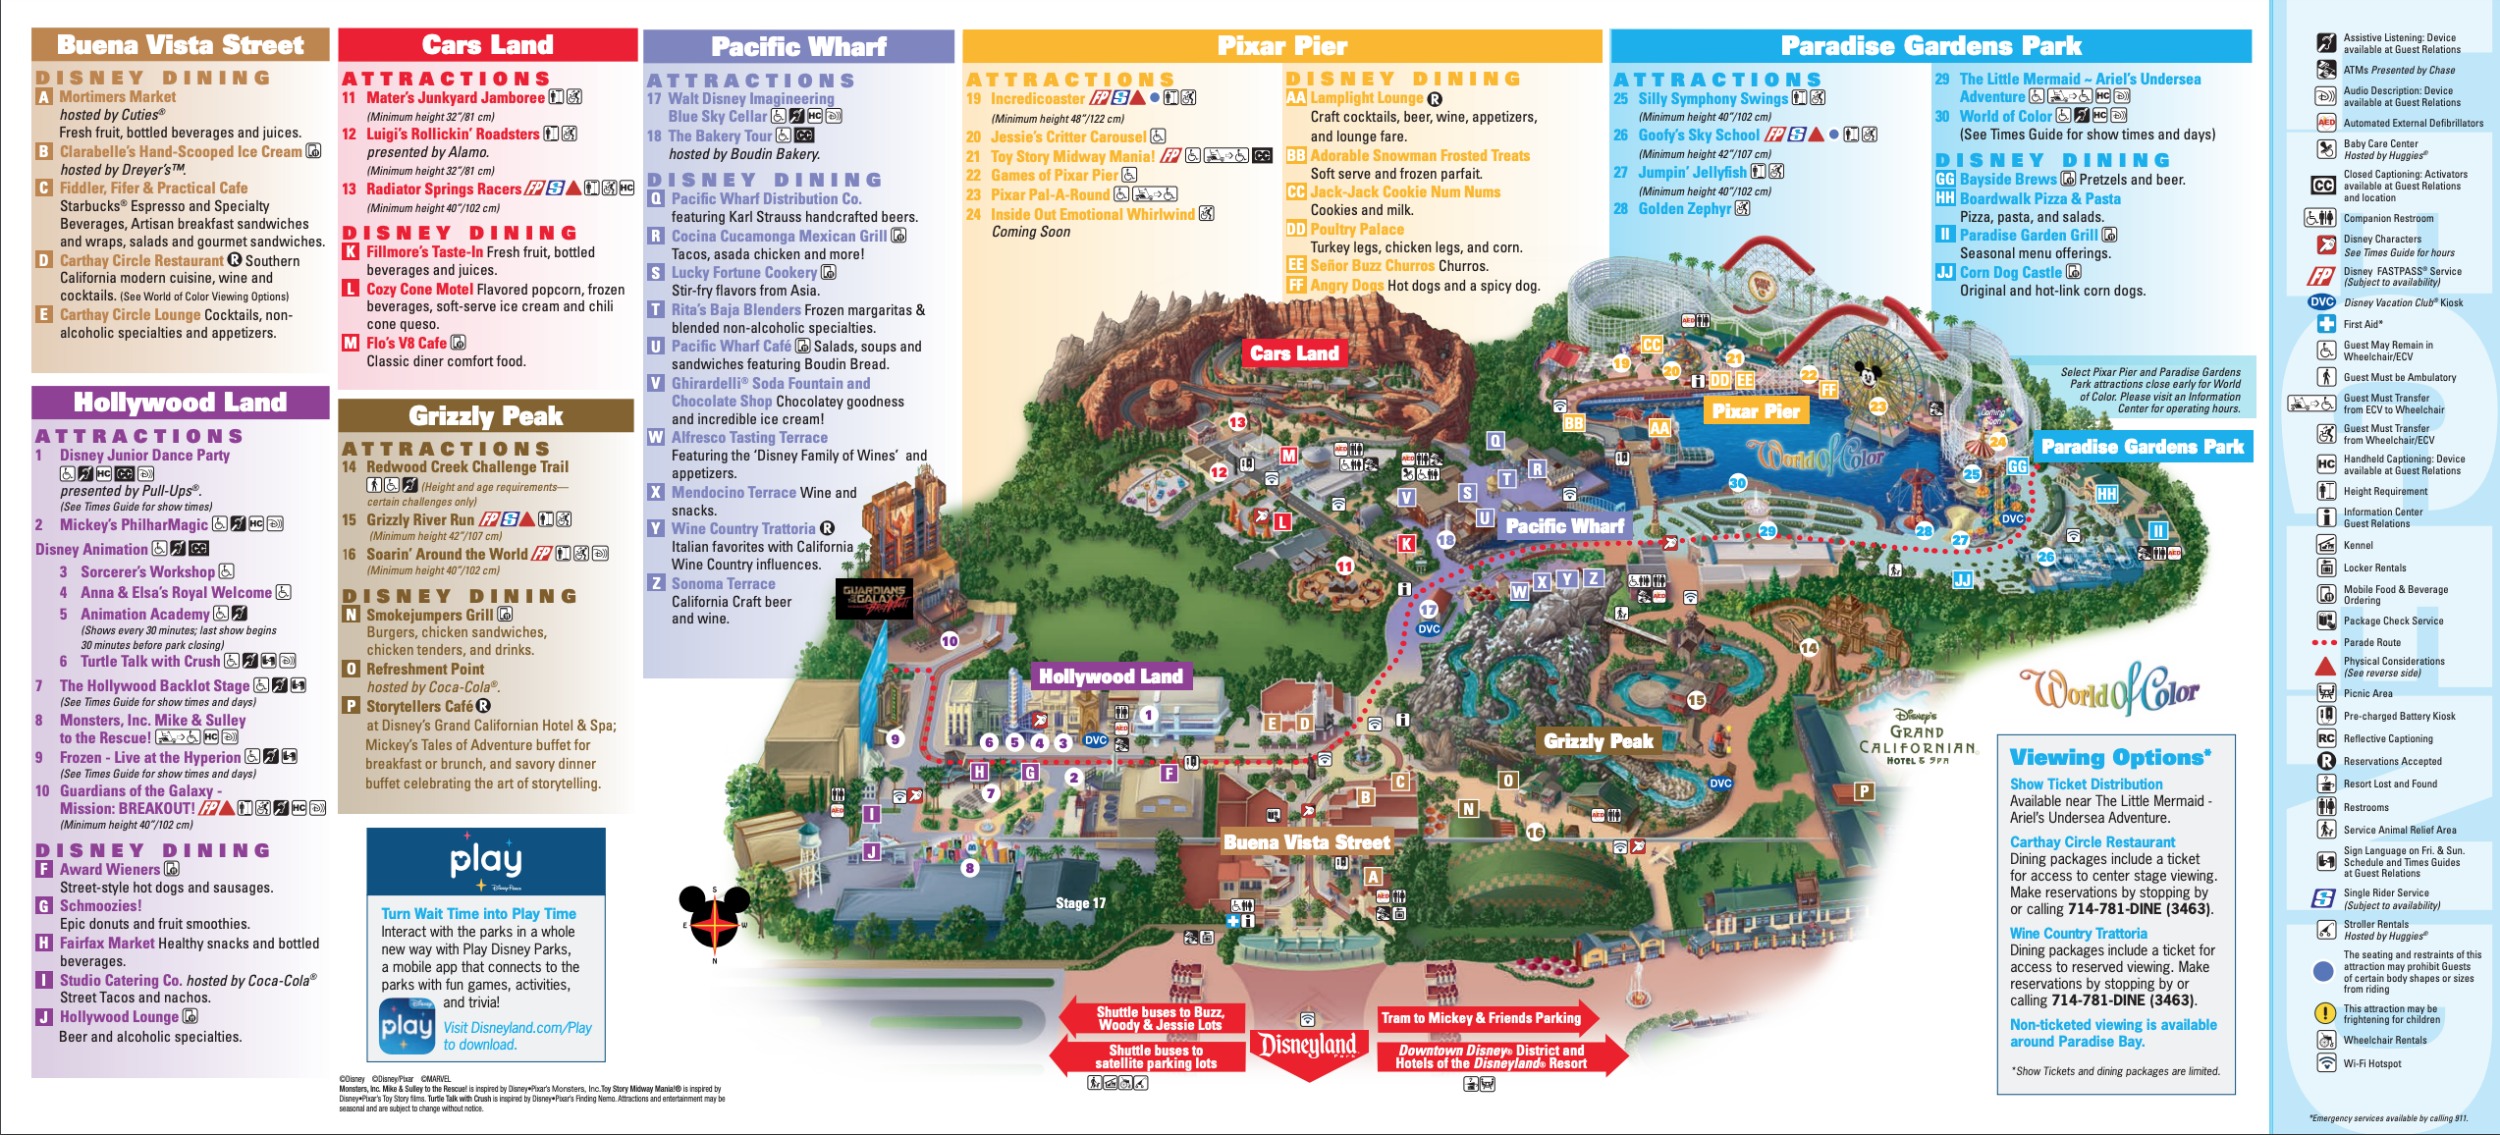 Disney California Adventure Map